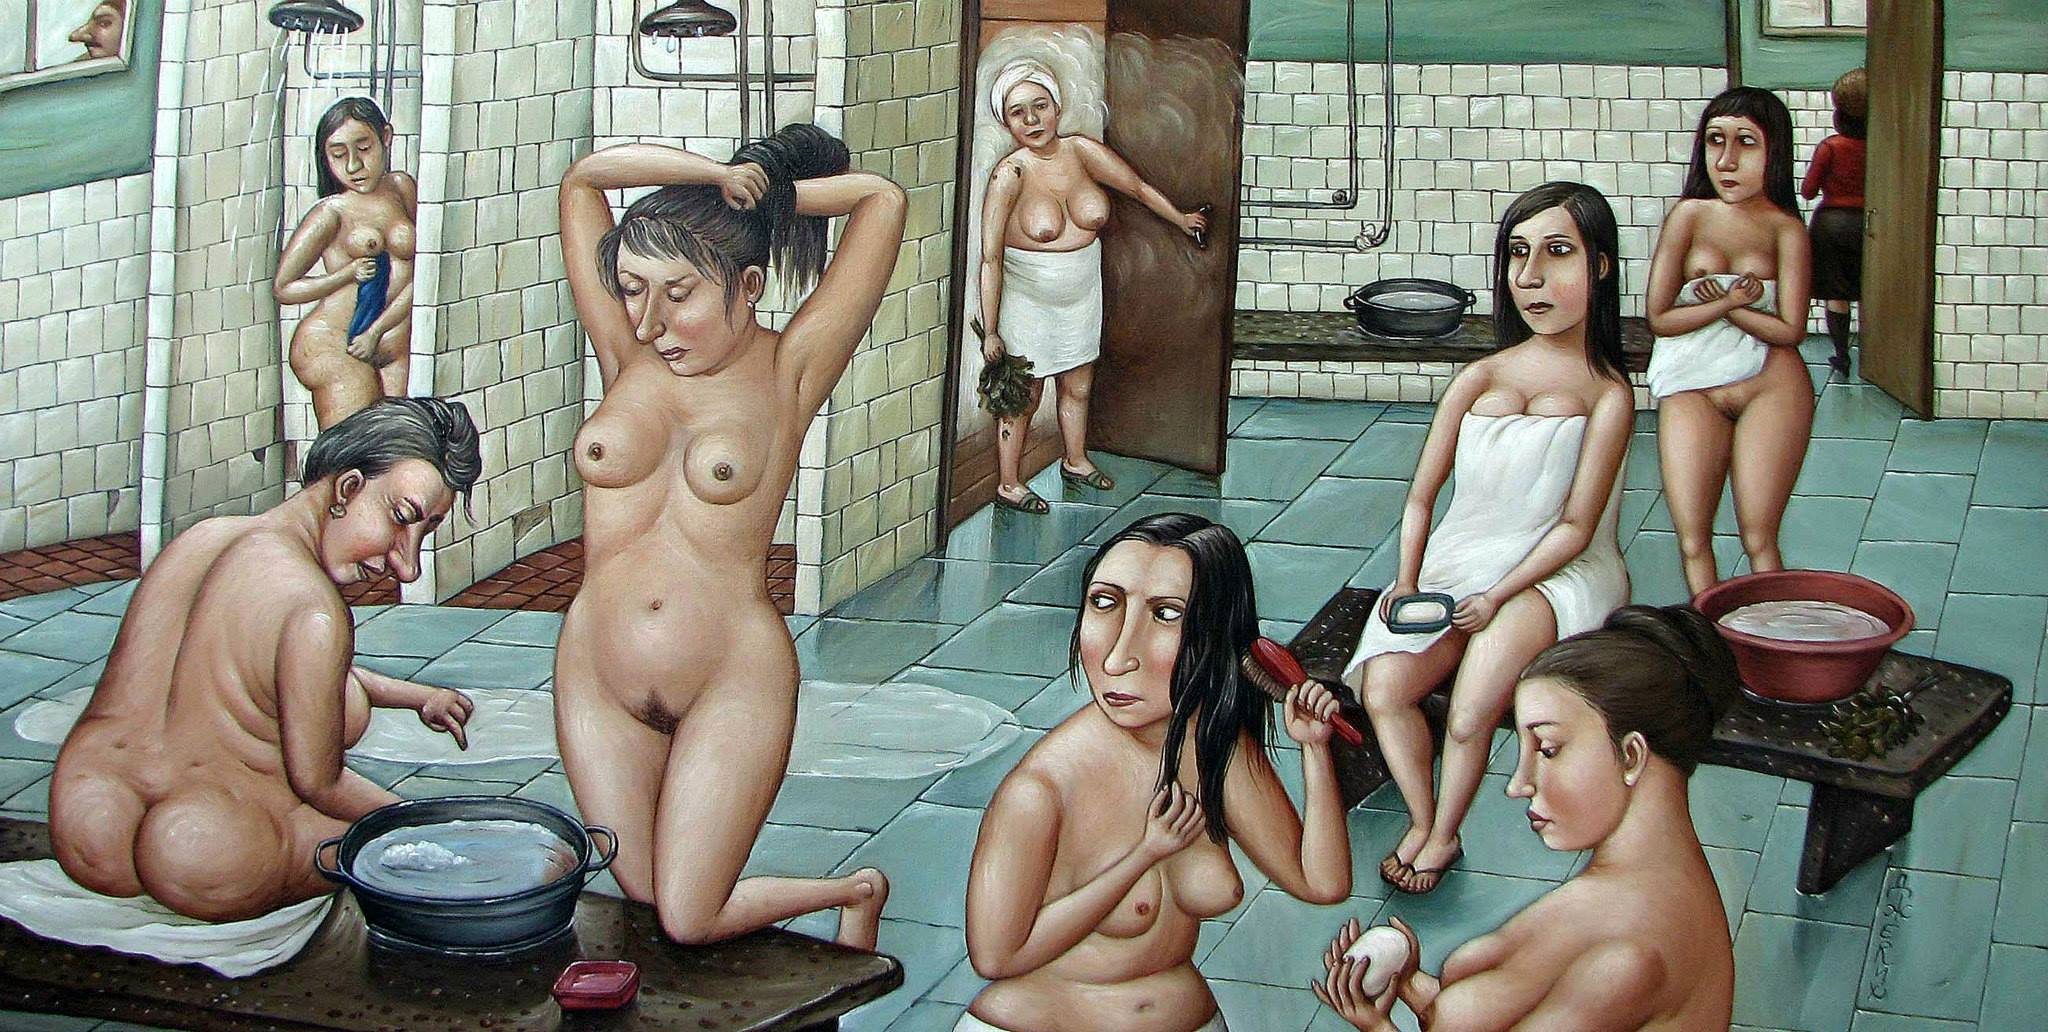 Малките радости в живота в картините на Анжел Джерих